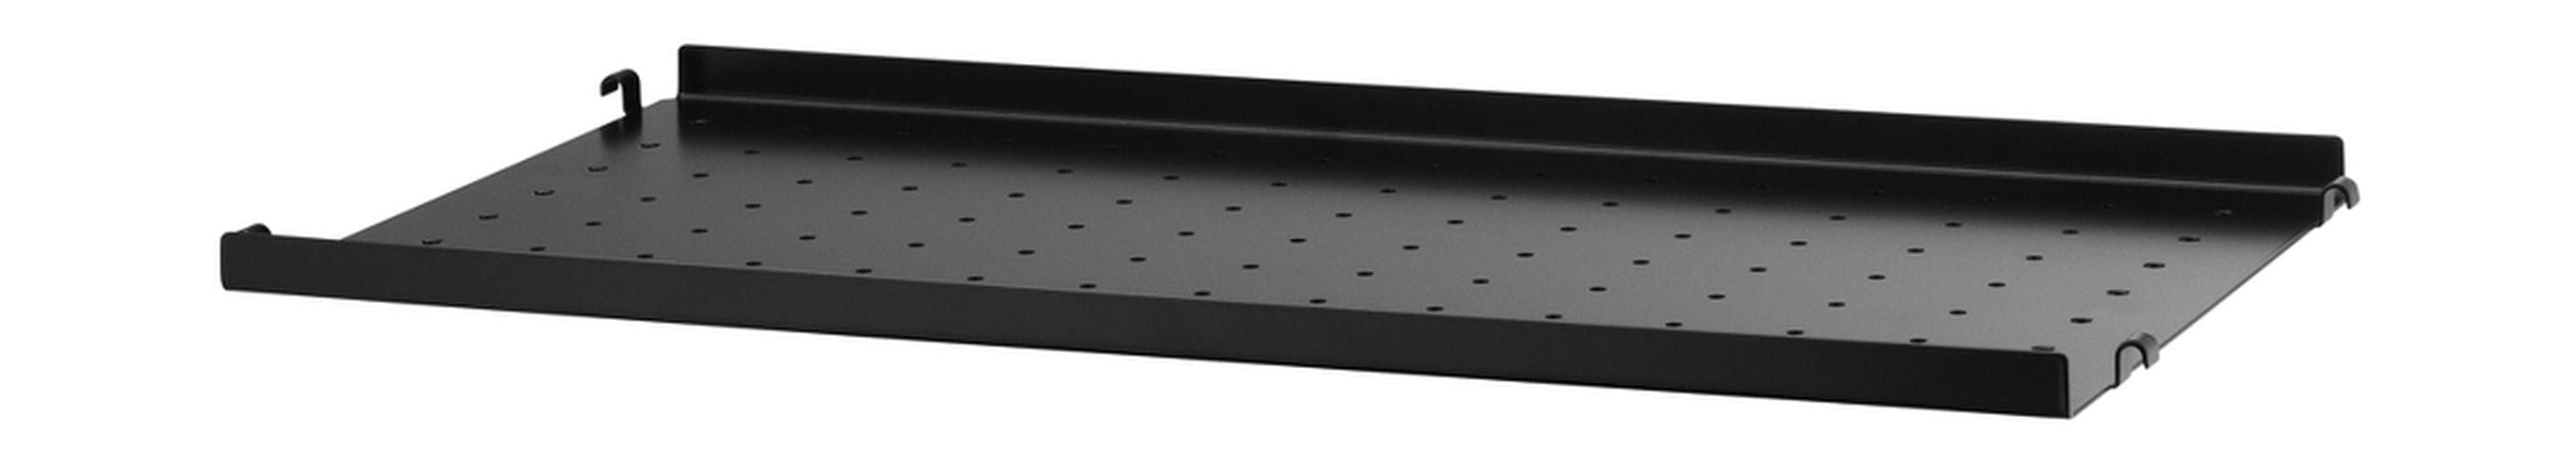 String Furniture Metalen plank van strijkersysteem met lage rand 30x58 cm, zwart